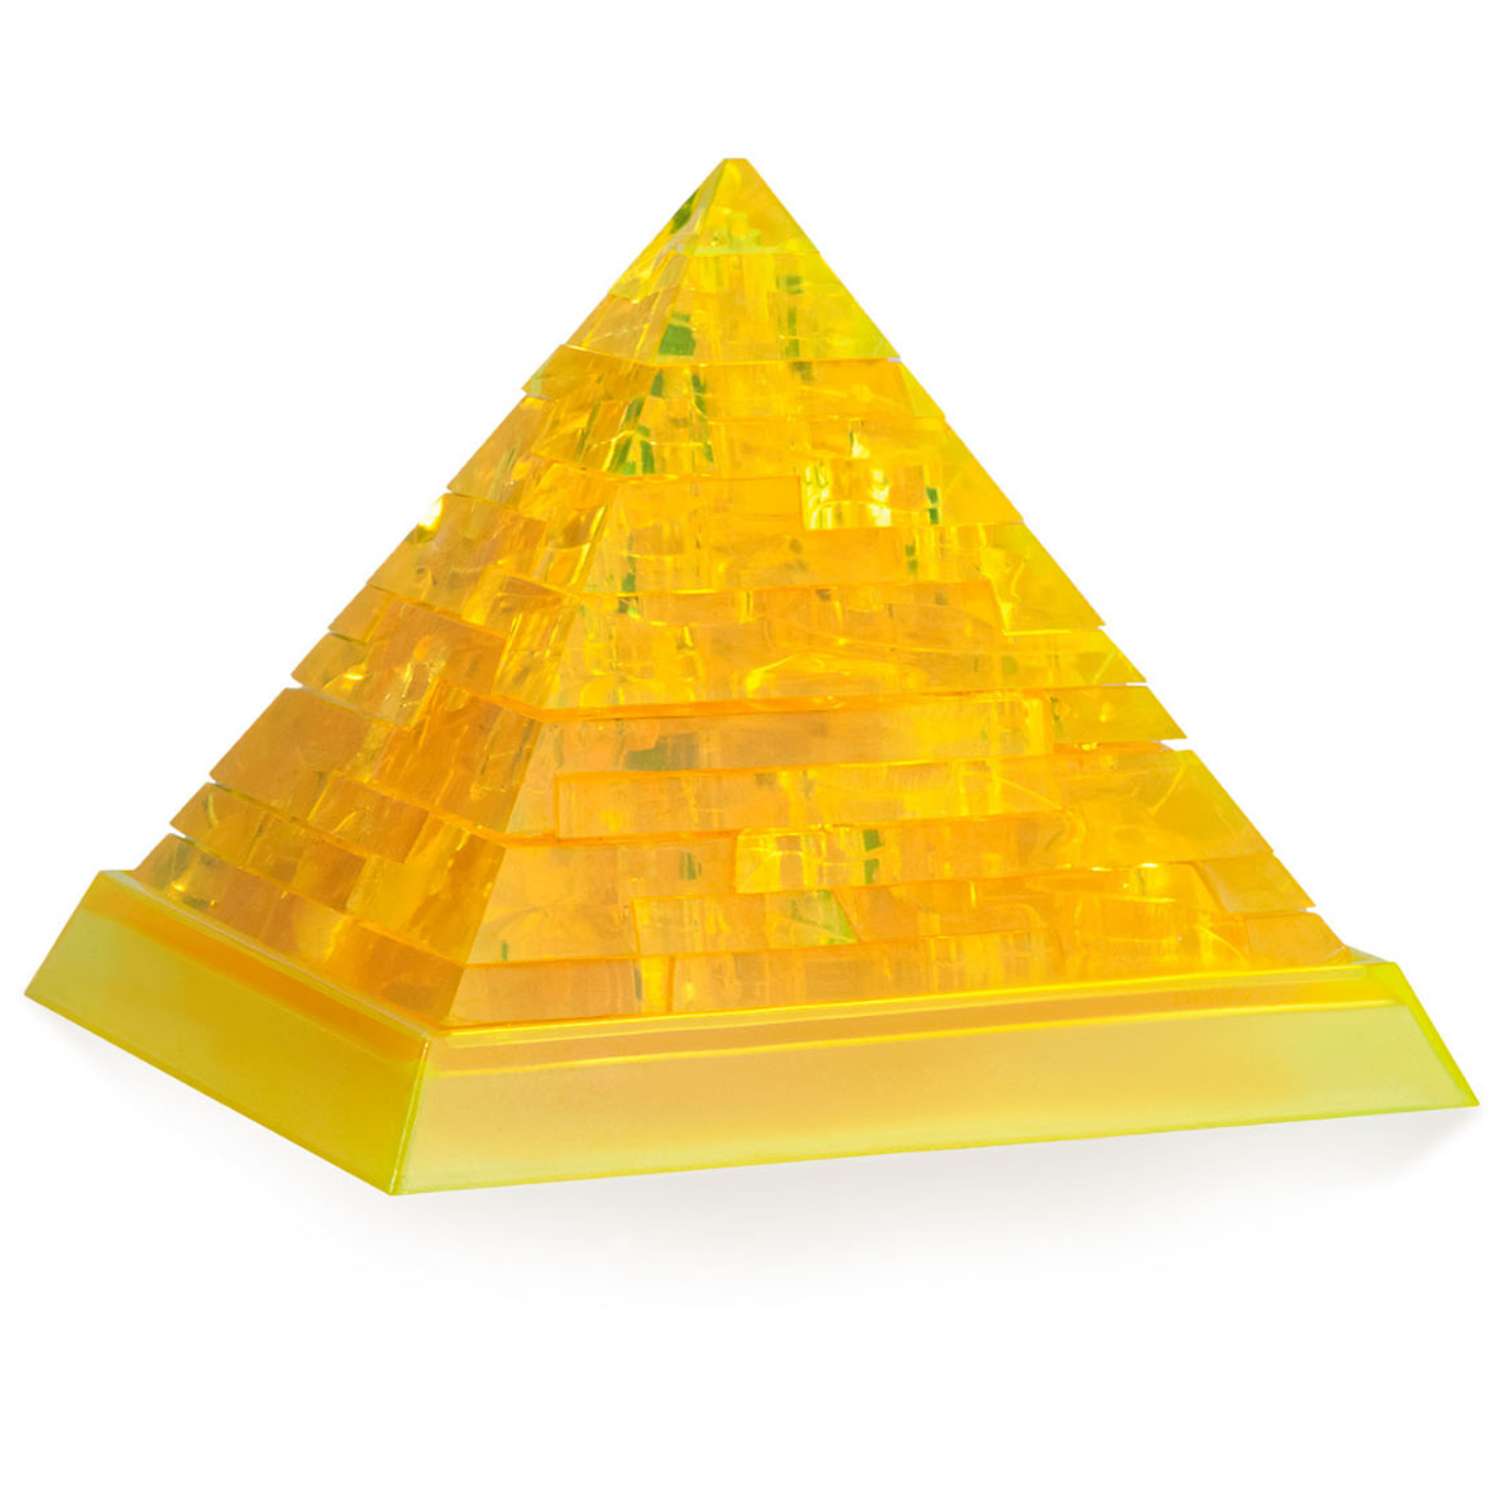 Т д пирамида. Crystal Puzzle 3d пирамиды. 3d-пазл магический Кристалл пирамида с подсветкой (29014а), 38 дет.. IQ Puzzle пирамида. "Hobby Day" магический Кристалл лягушка.